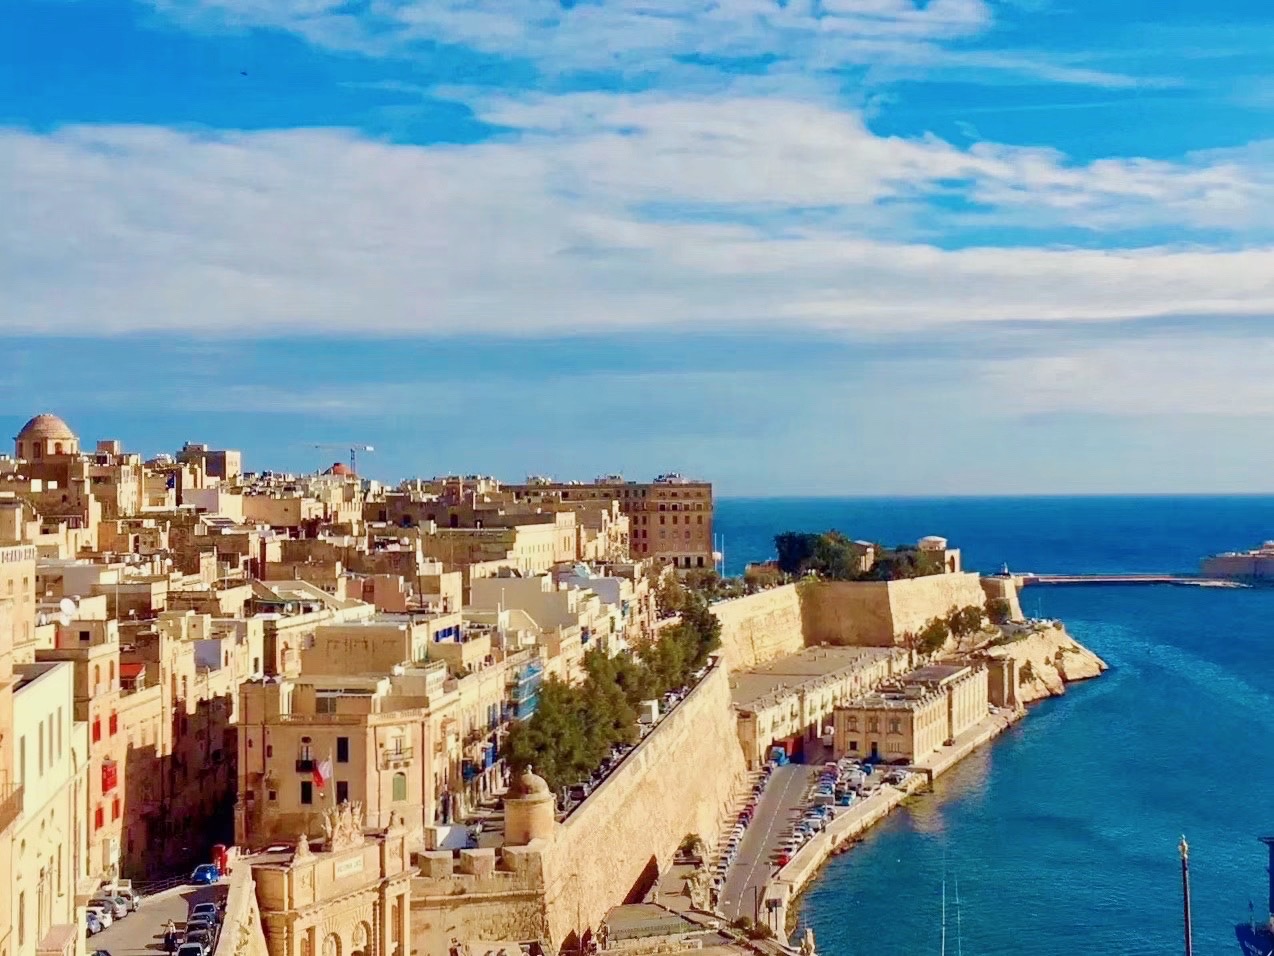 马耳他，地中海的岛屿国家，首都瓦莱塔。都是由石灰岩建成。城市的街道，笔直狭窄，房屋见棱见方。屋外的悬